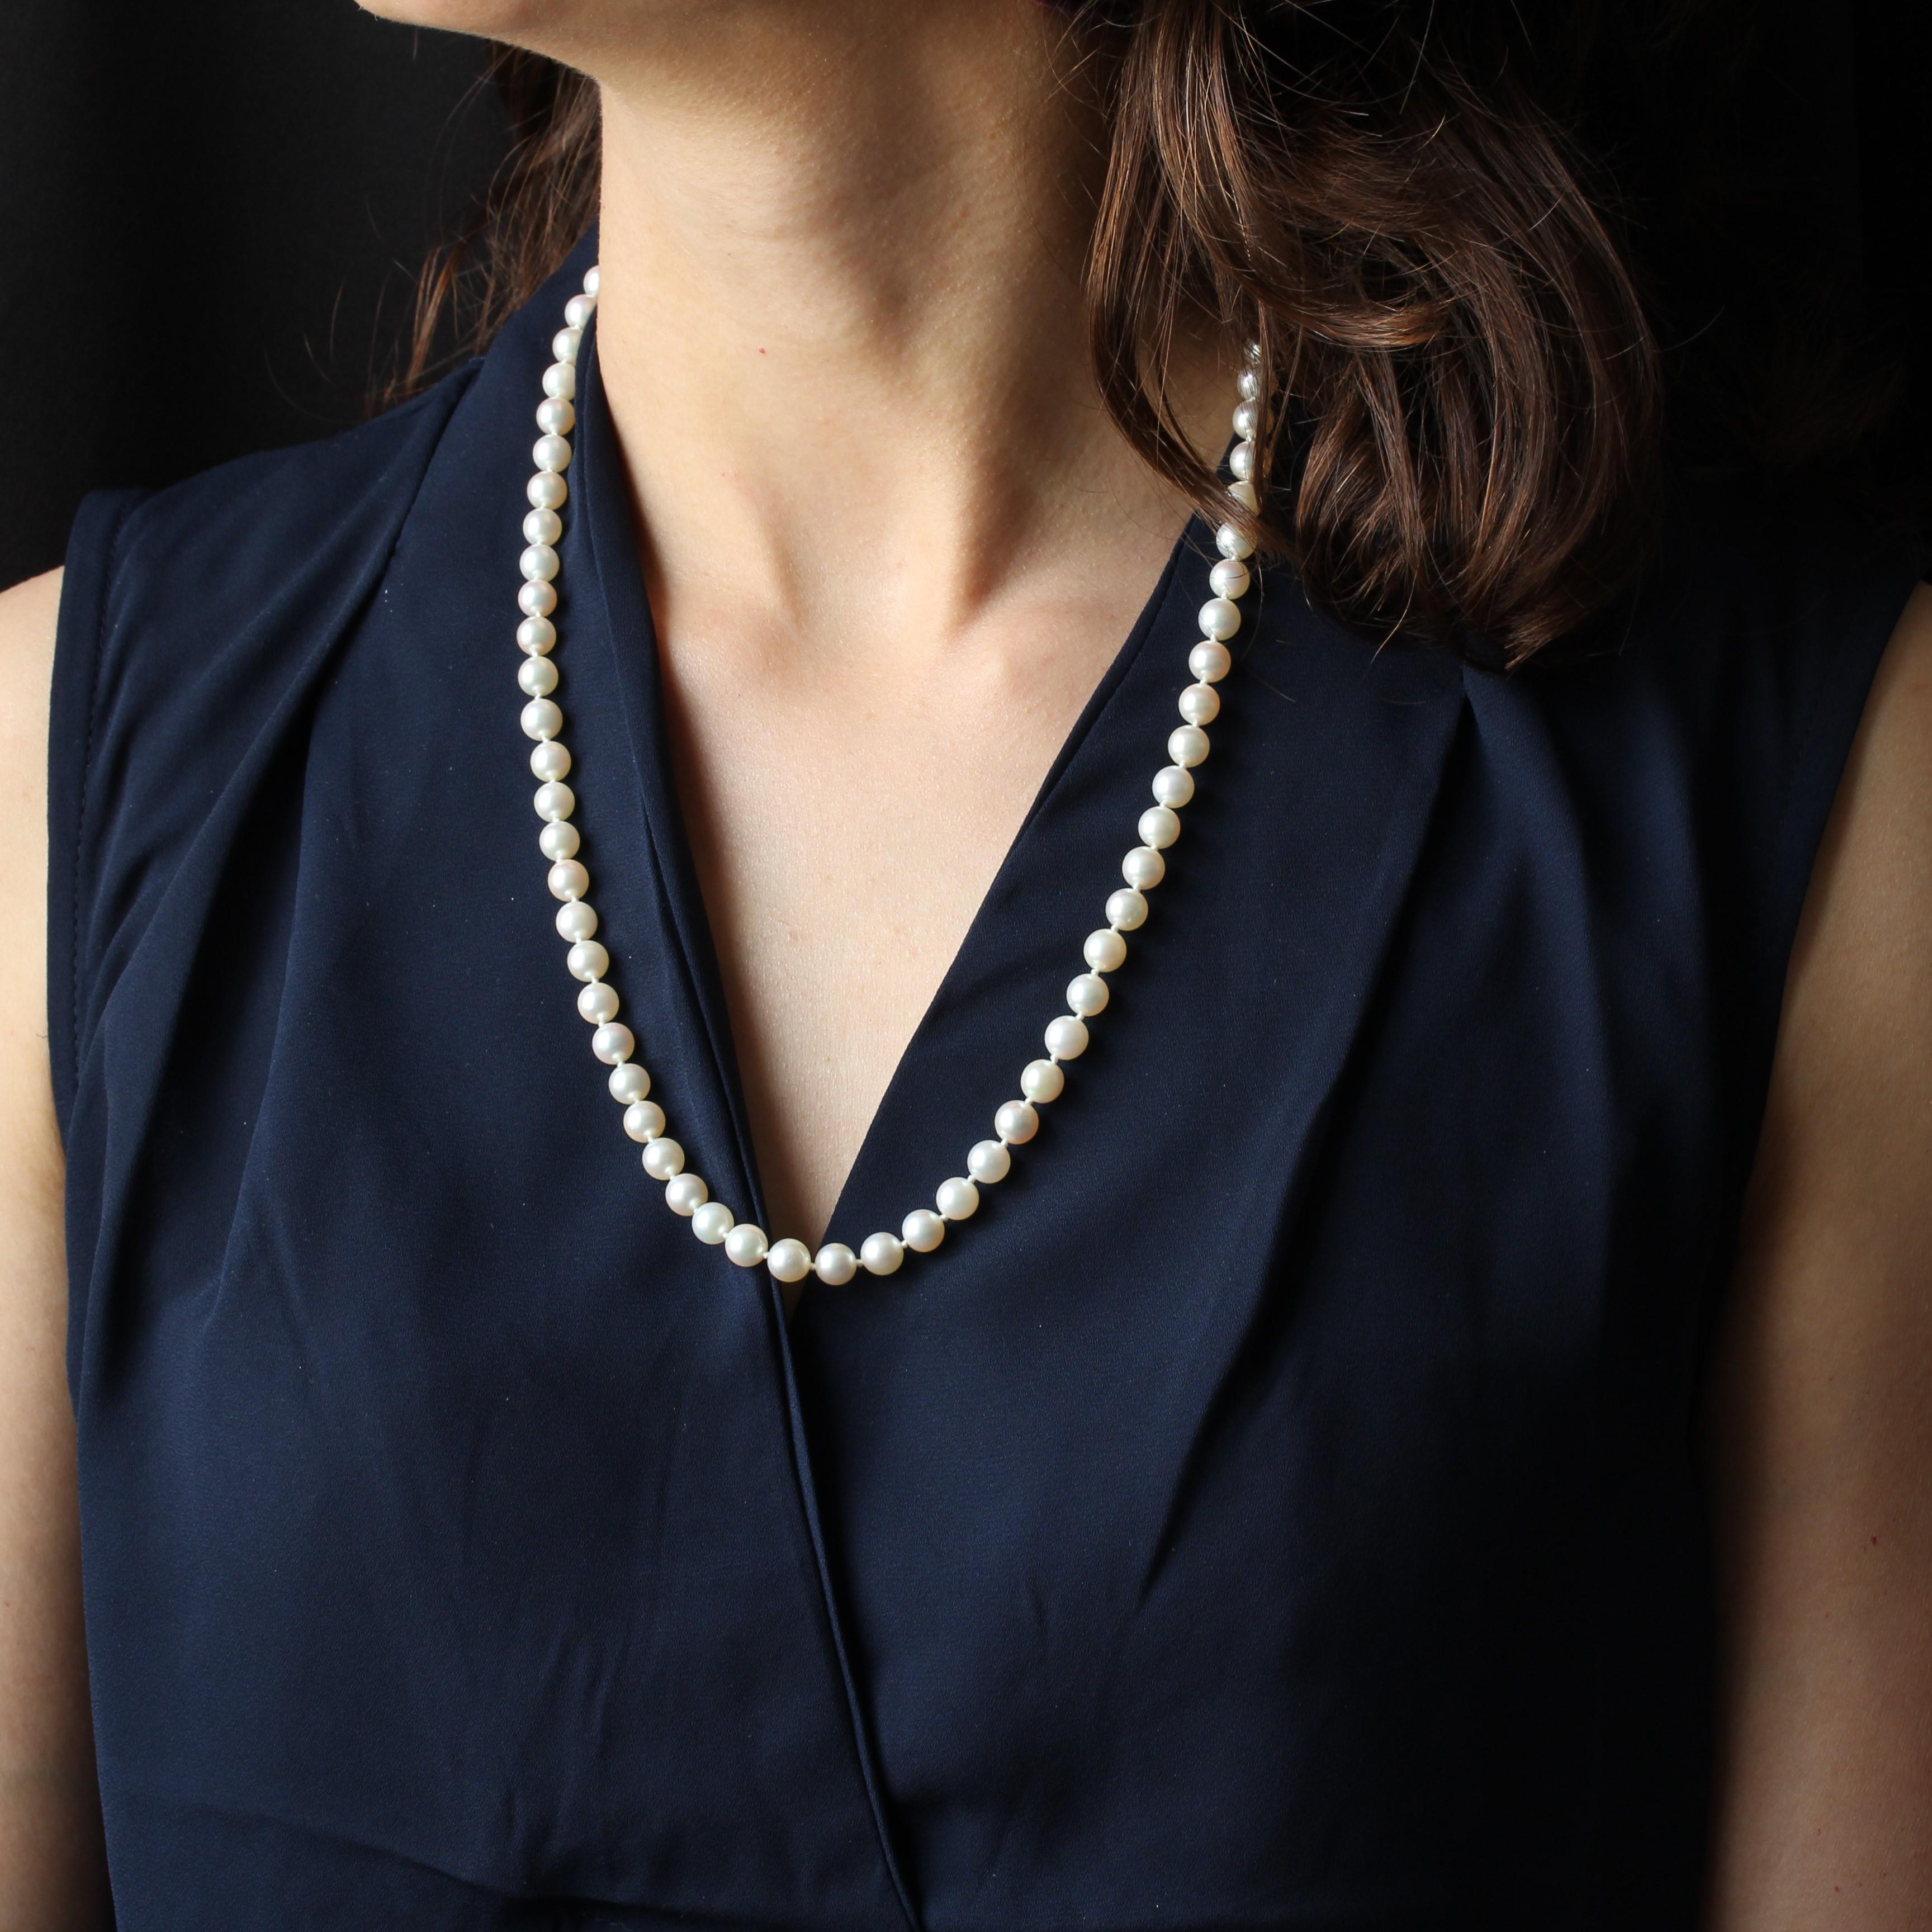 Halskette aus weißen japanischen Zuchtperlen, fallend. Die Schließe ist in einer ovalen Perle am Ende versteckt. Er wird mit einer Sicherheitskette mit Federring aus 18 Karat Weißgold geliefert.
Länge: 58 cm
Durchmesser der Perlen: 6,5 / 7